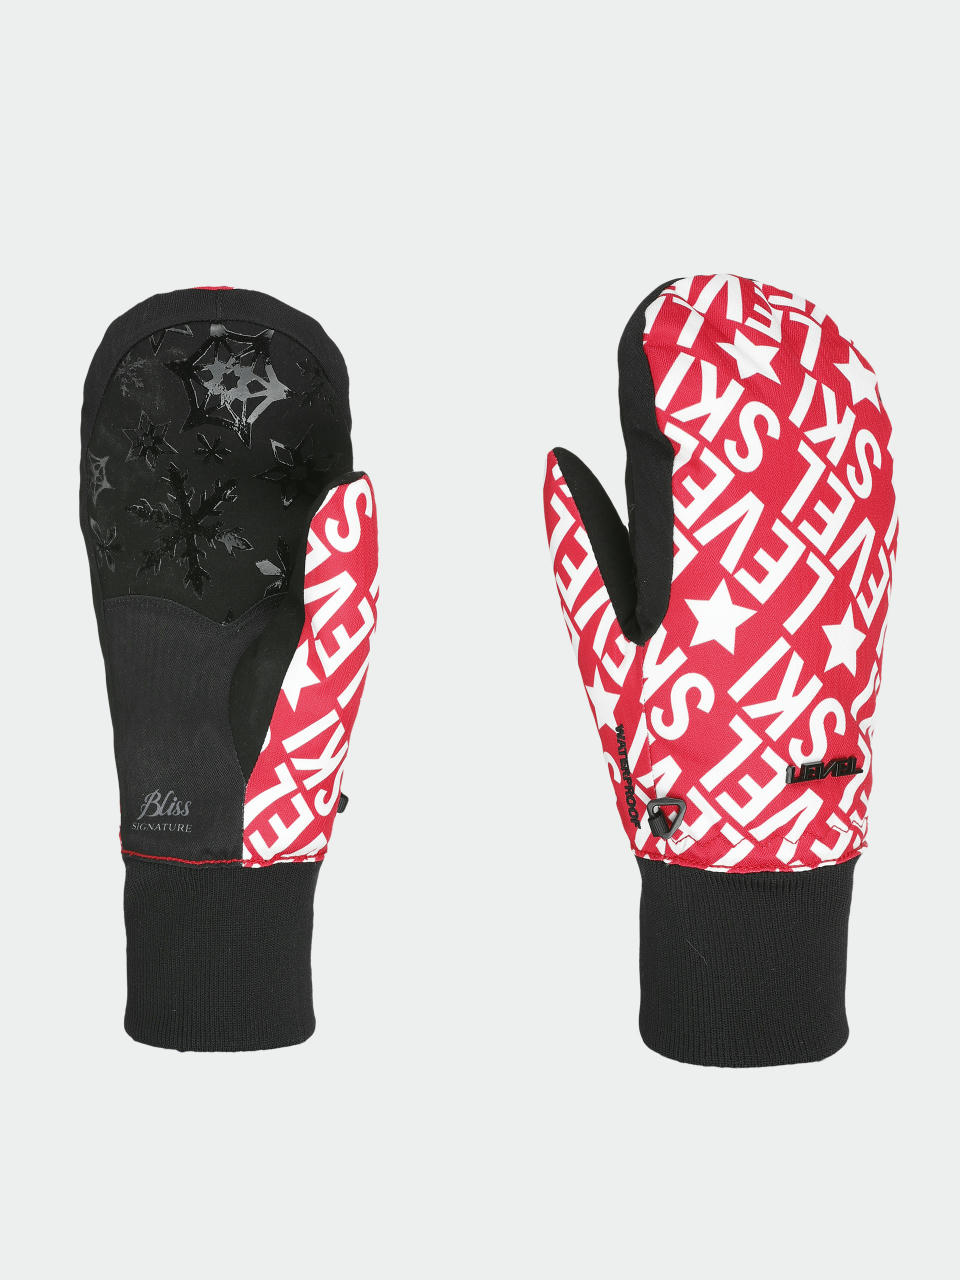 Level Coral Mitt Gloves Wmn (white/red)